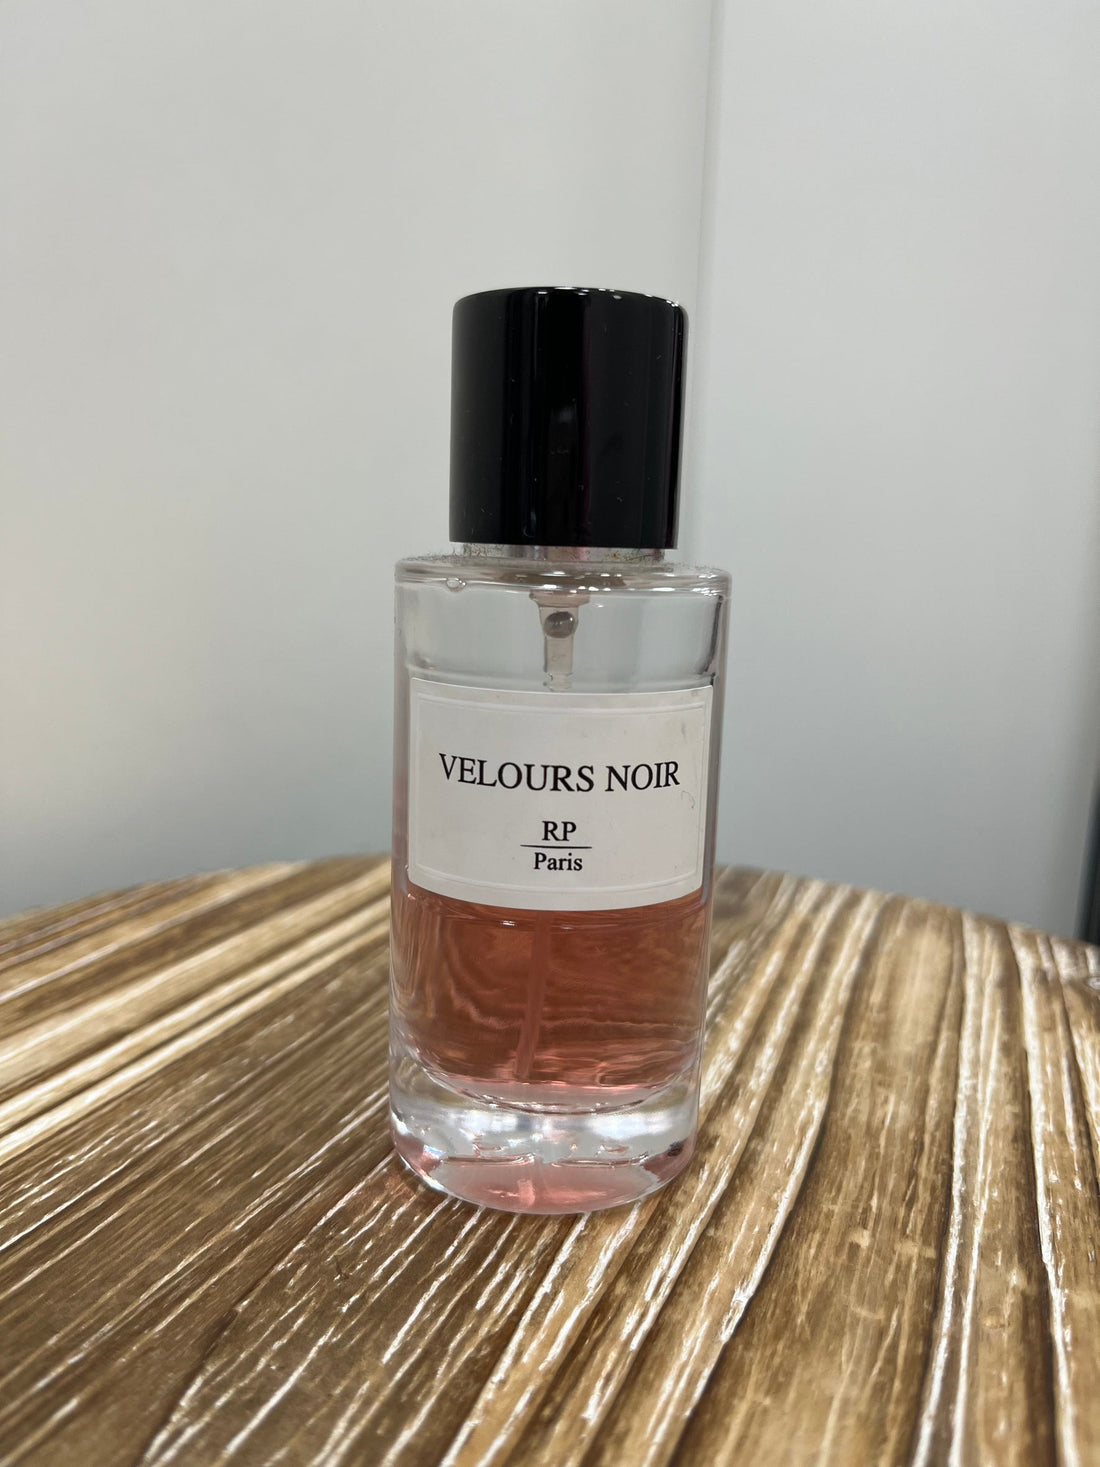 RP Paris - Parfum Velours noir - Stayin